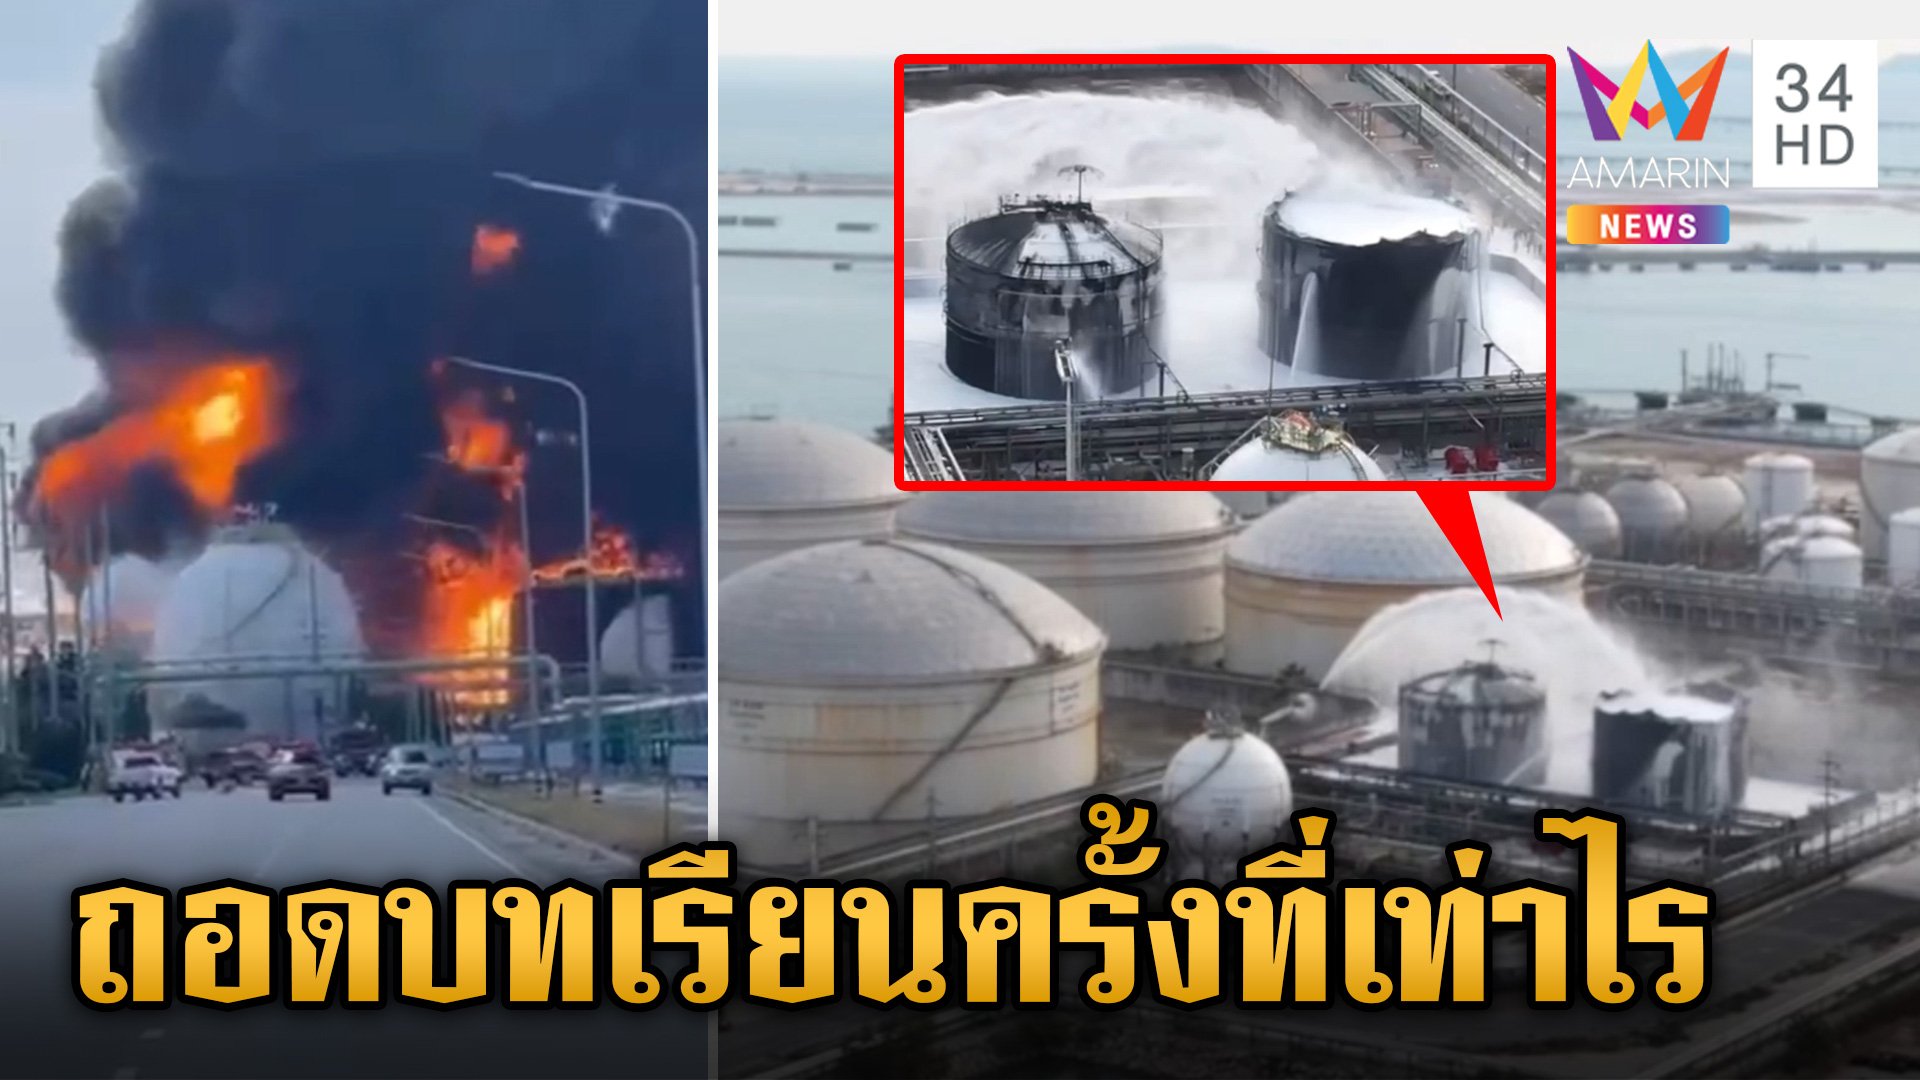 ถอดบทเรียนครั้งที่เท่าไร ประเทศไทยกับเหตุ "ถังสารเคมีระเบิด" | ข่าวเย็นอมรินทร์ | 10 พ.ค. 67 | AMARIN TVHD34